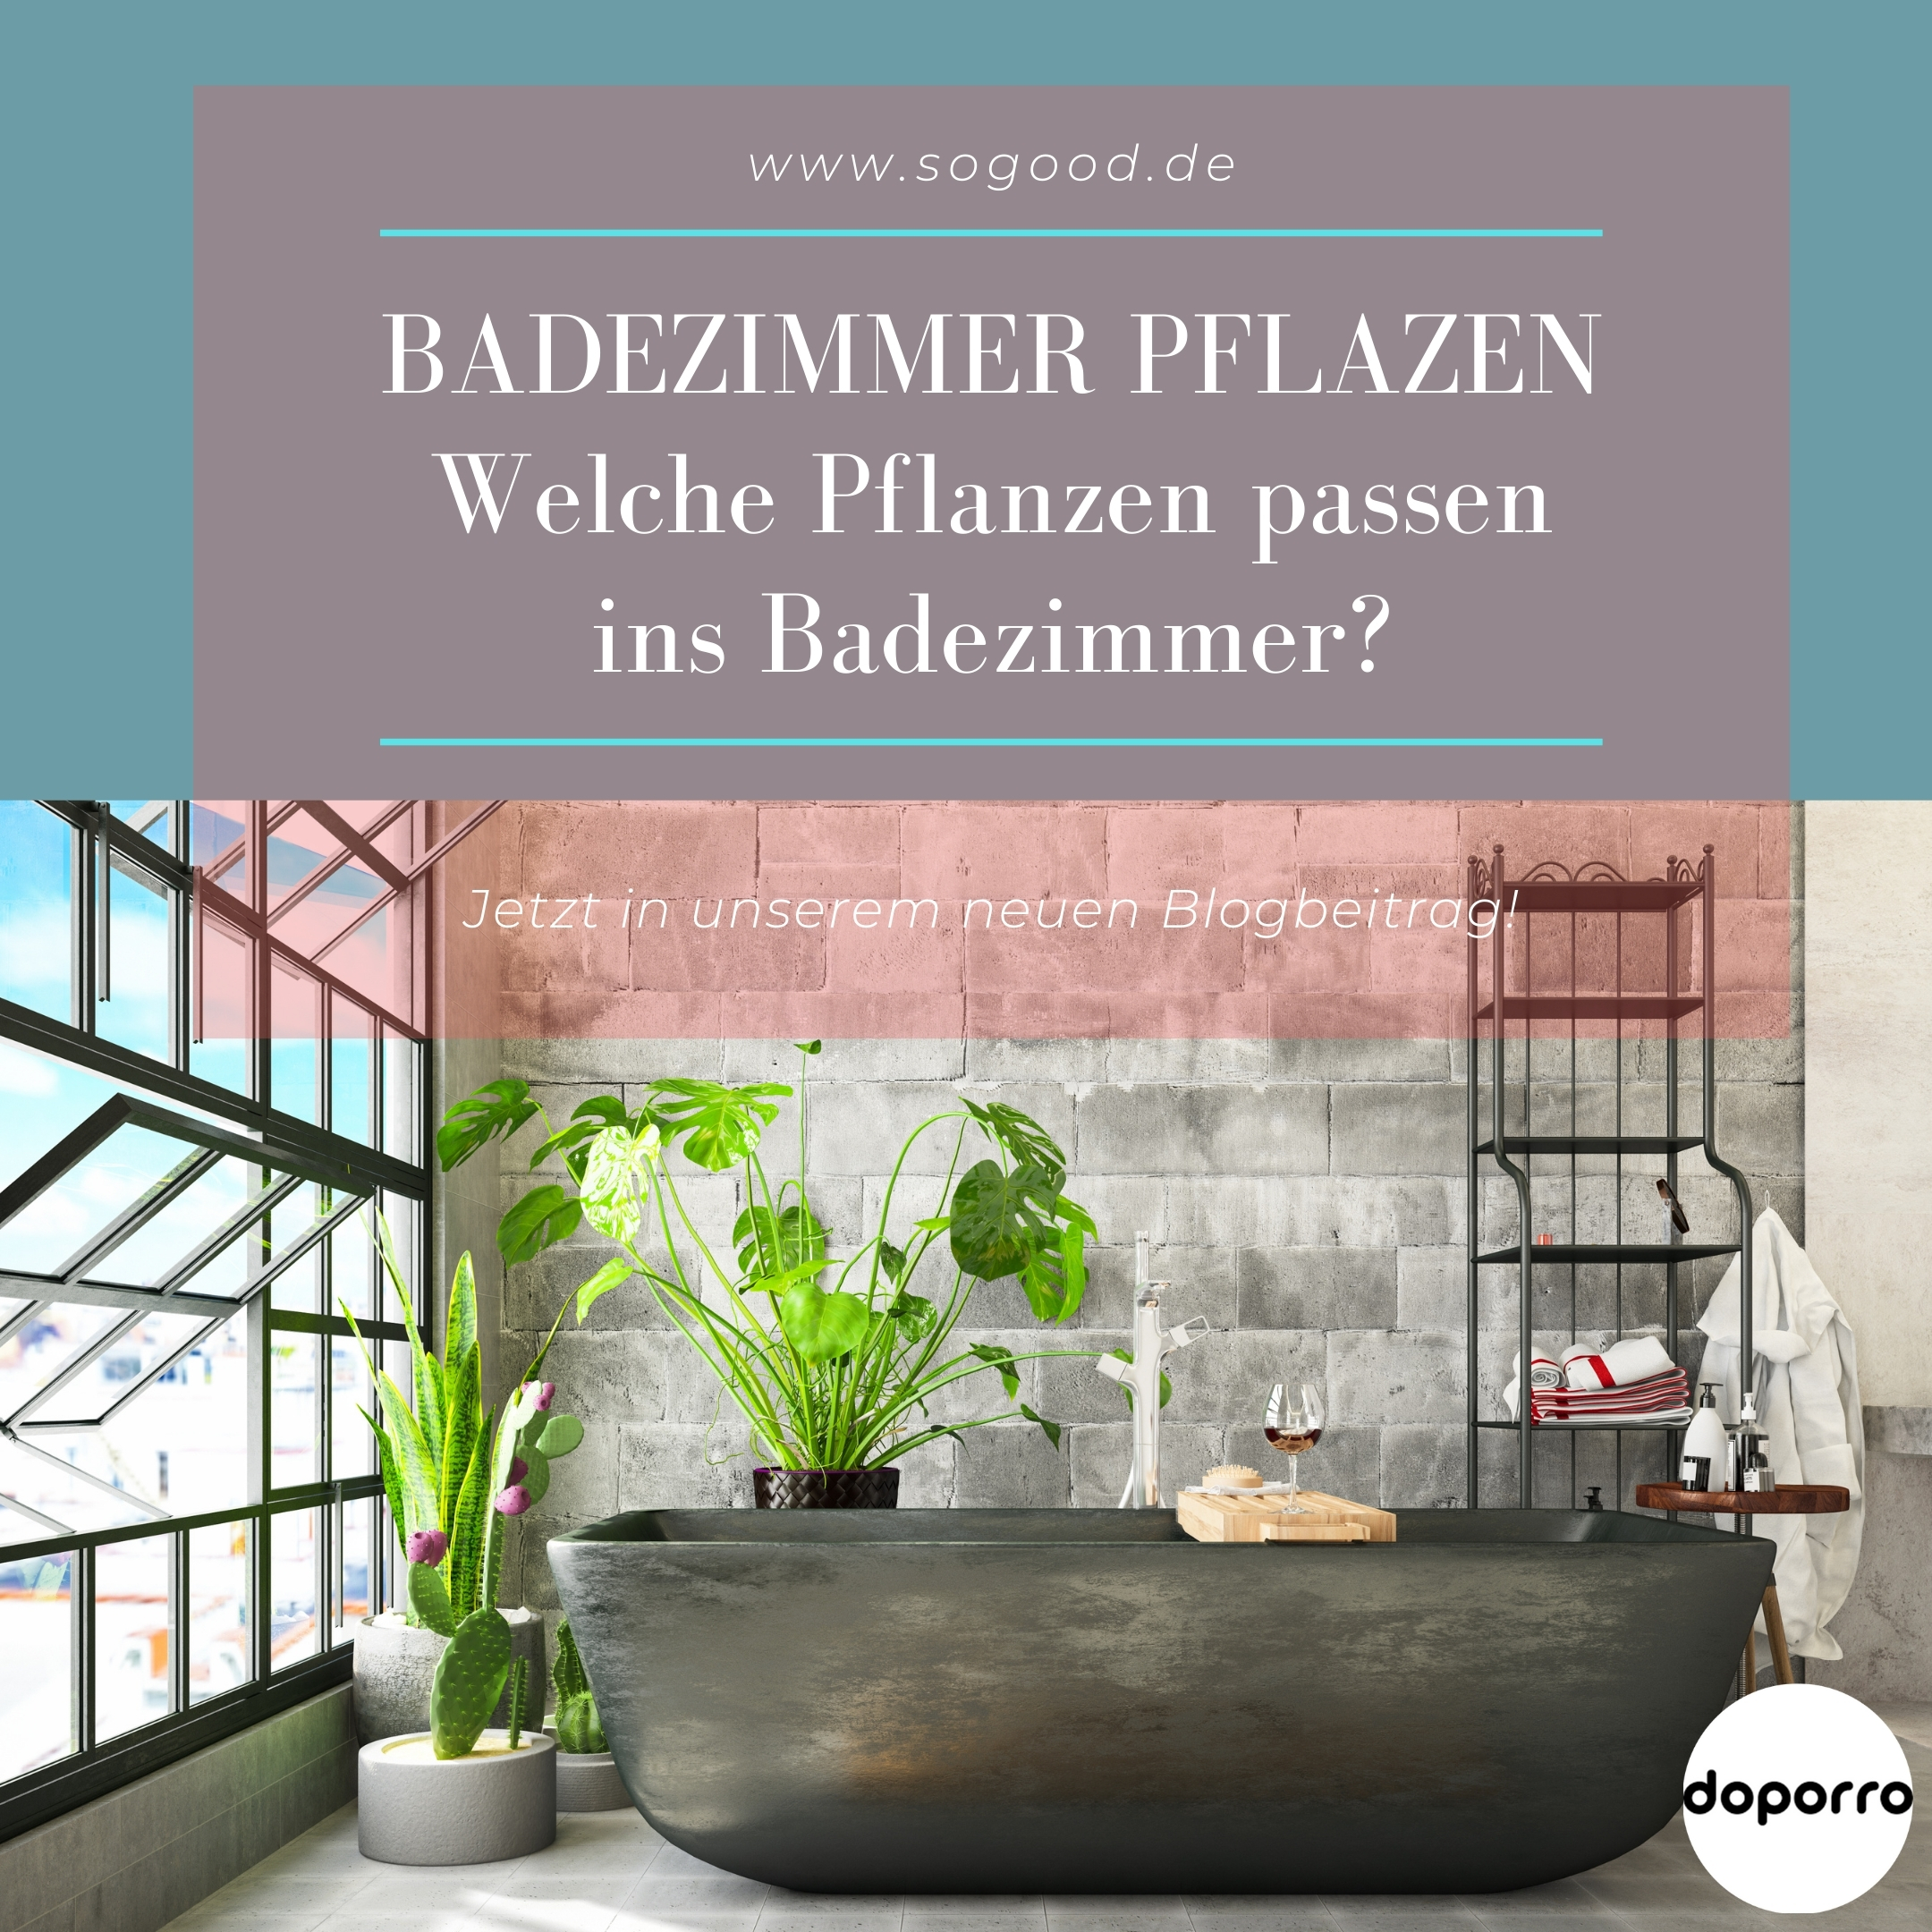 Badezimmer Pflanzen - Welche Pflanze passen ins Badezimmer?